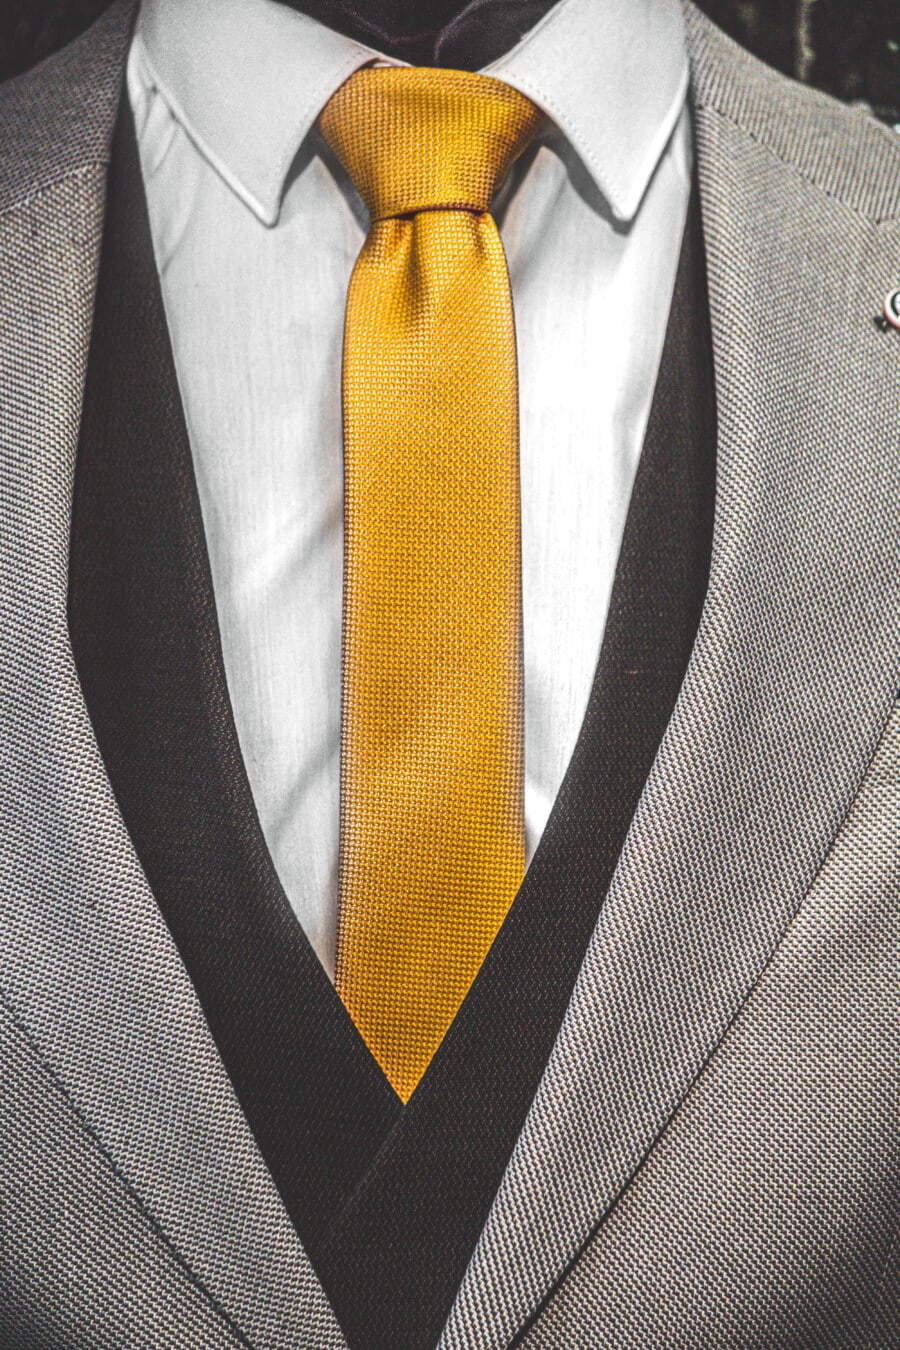 yellow, tie, tuxedo suit, jacket, black and white, textile, cotton, garment, businessman, suit